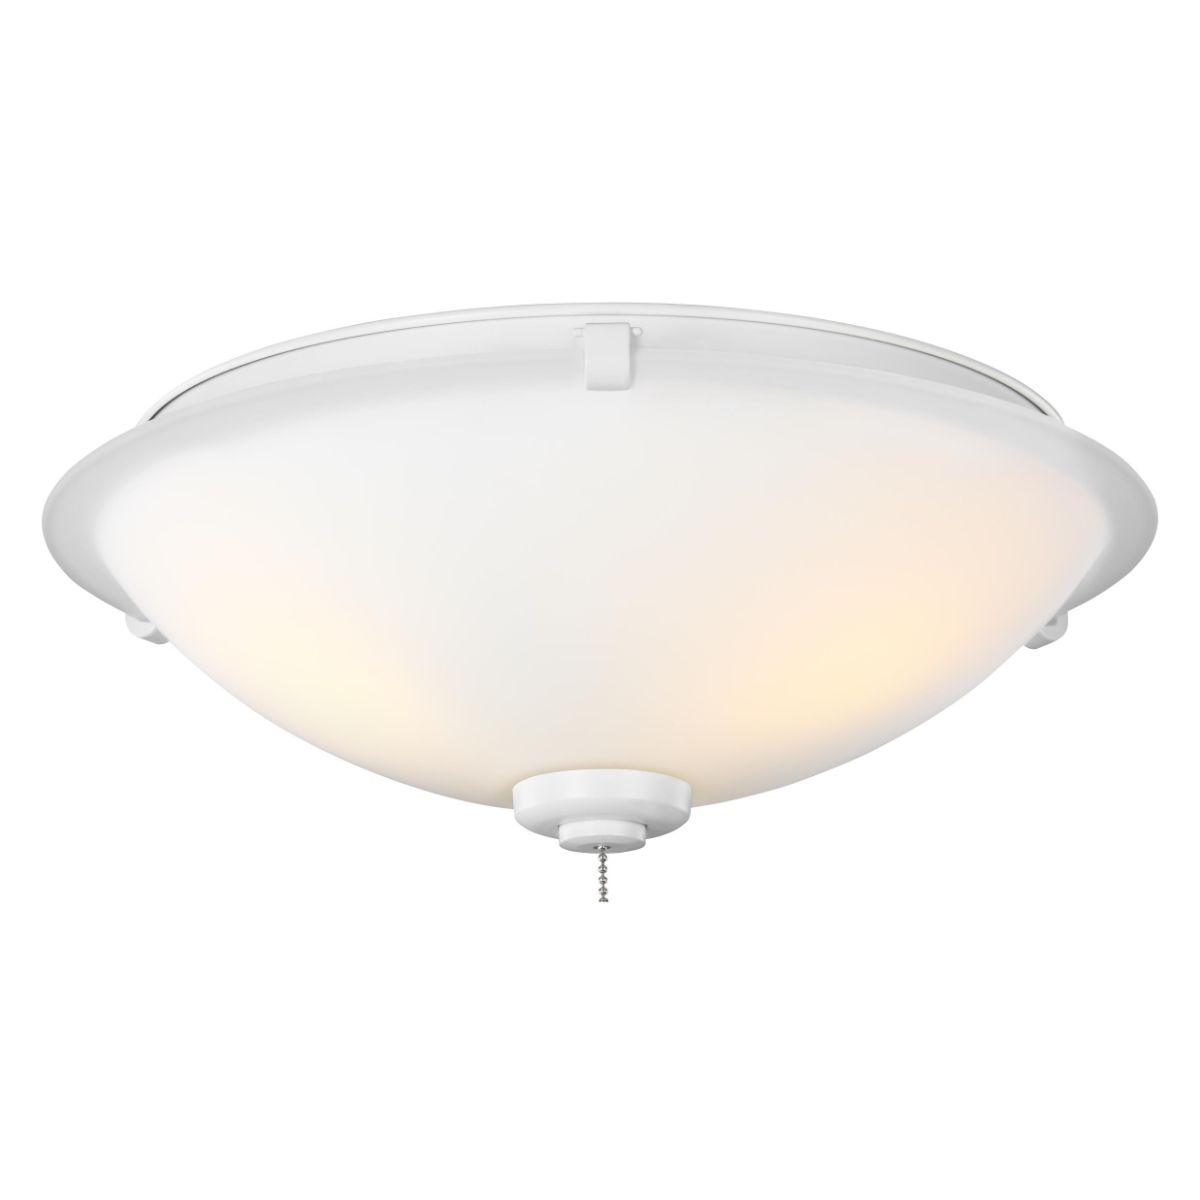 3 Light LED Universal Ceiling Fan Light Kit